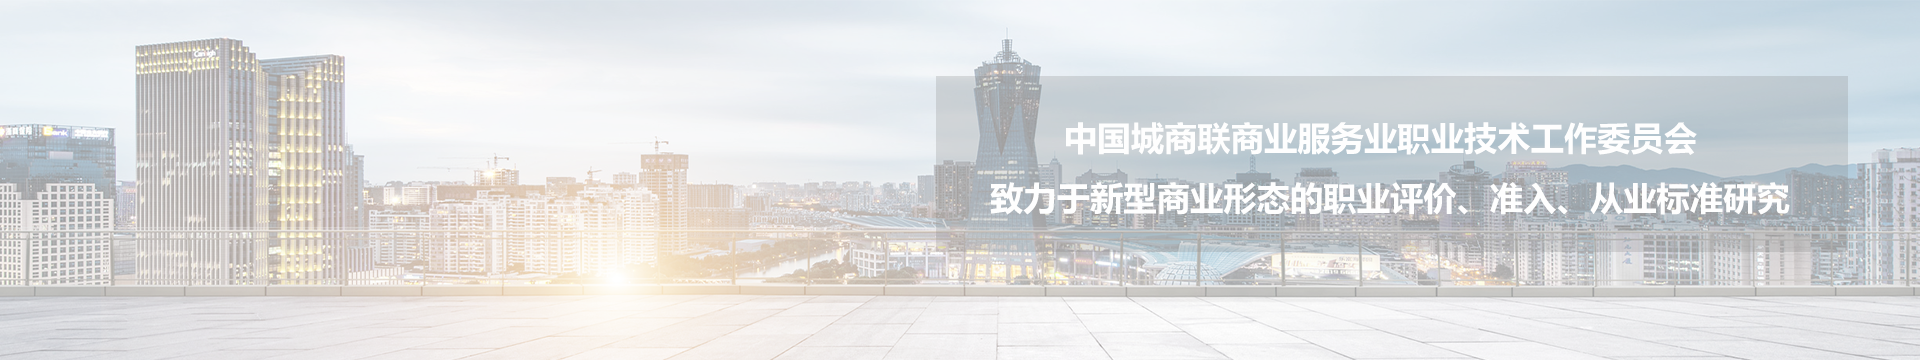 中国城商联商业服务业职业技术工作委员会 致力于新型商业形态的职业评价、准入、从业标准研究